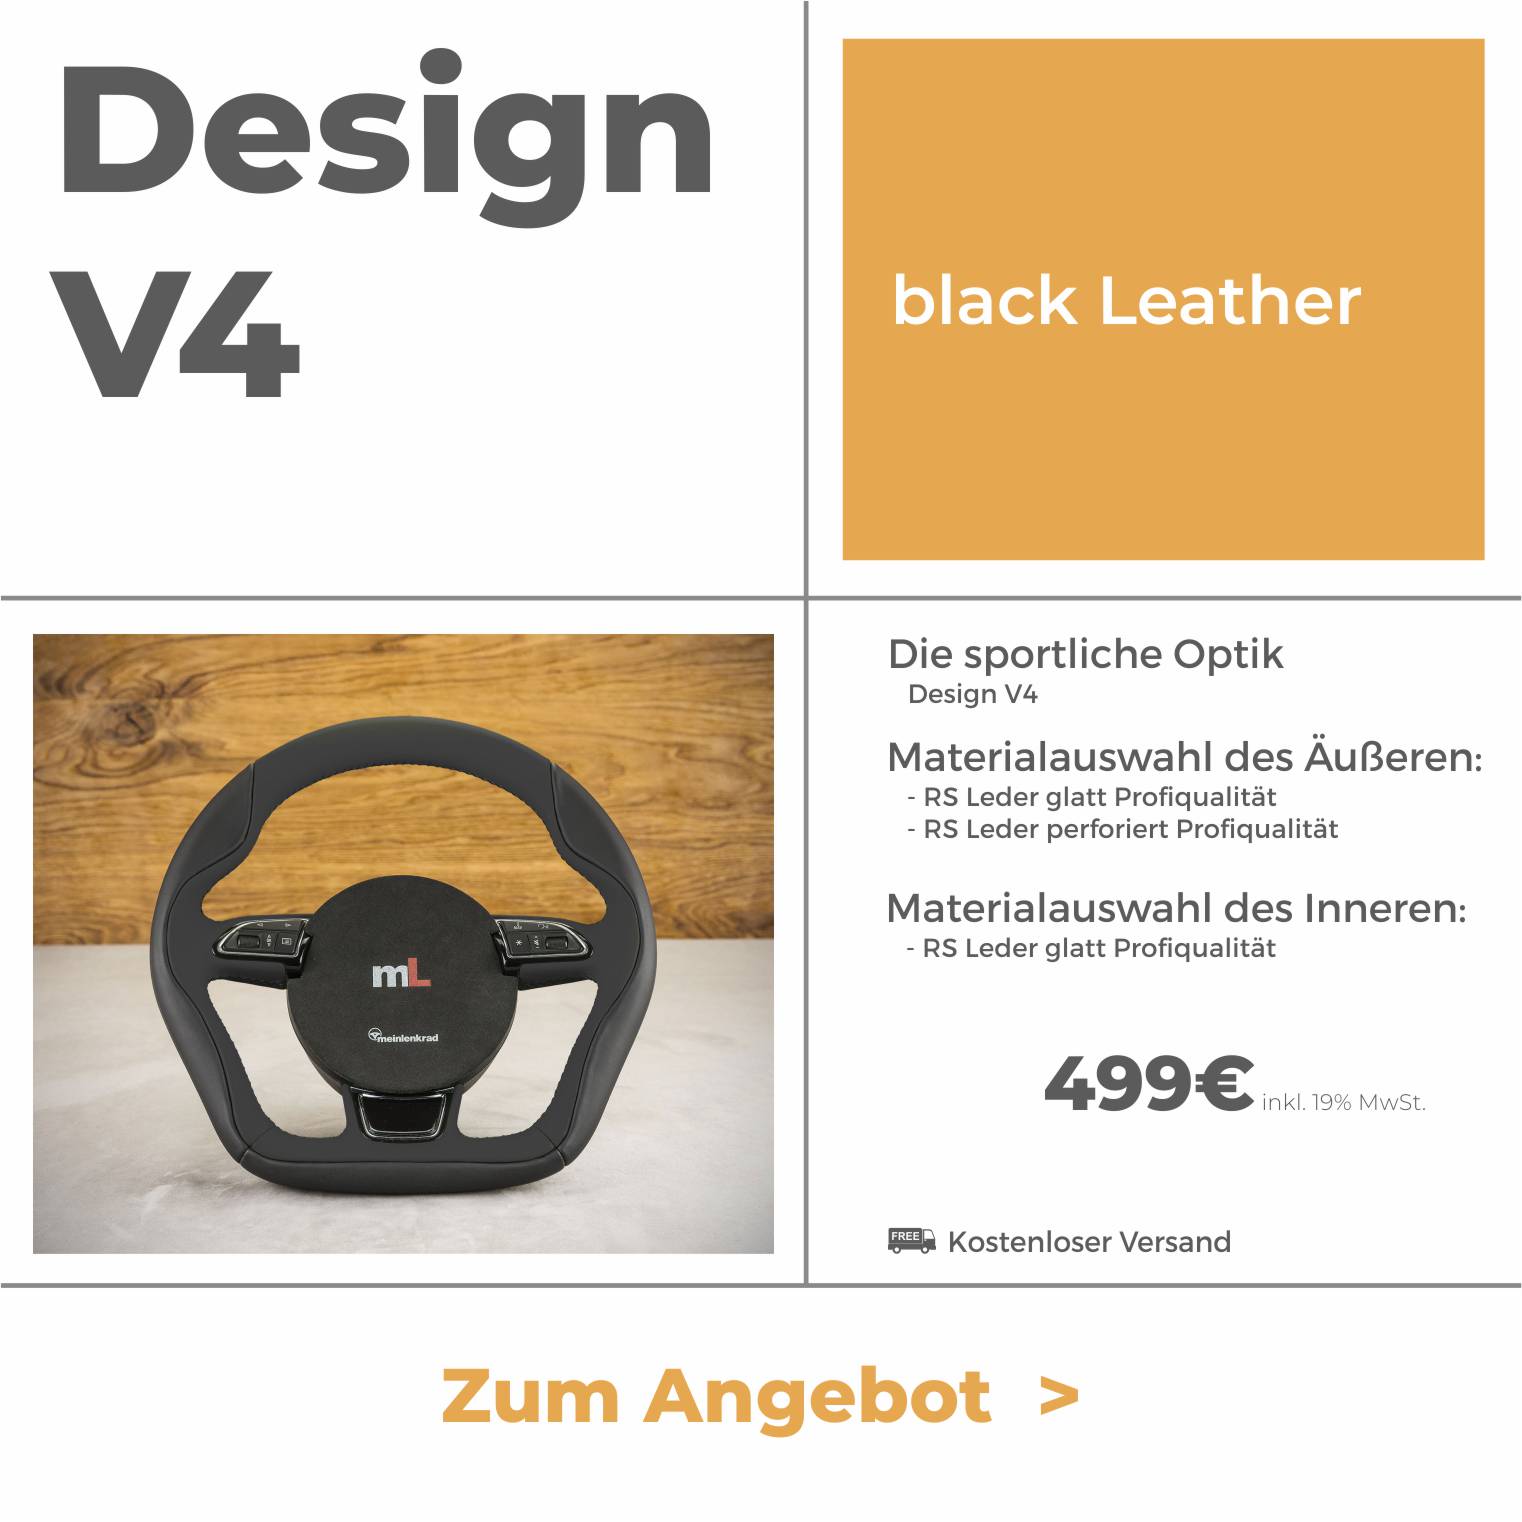 Design V4 - black leather